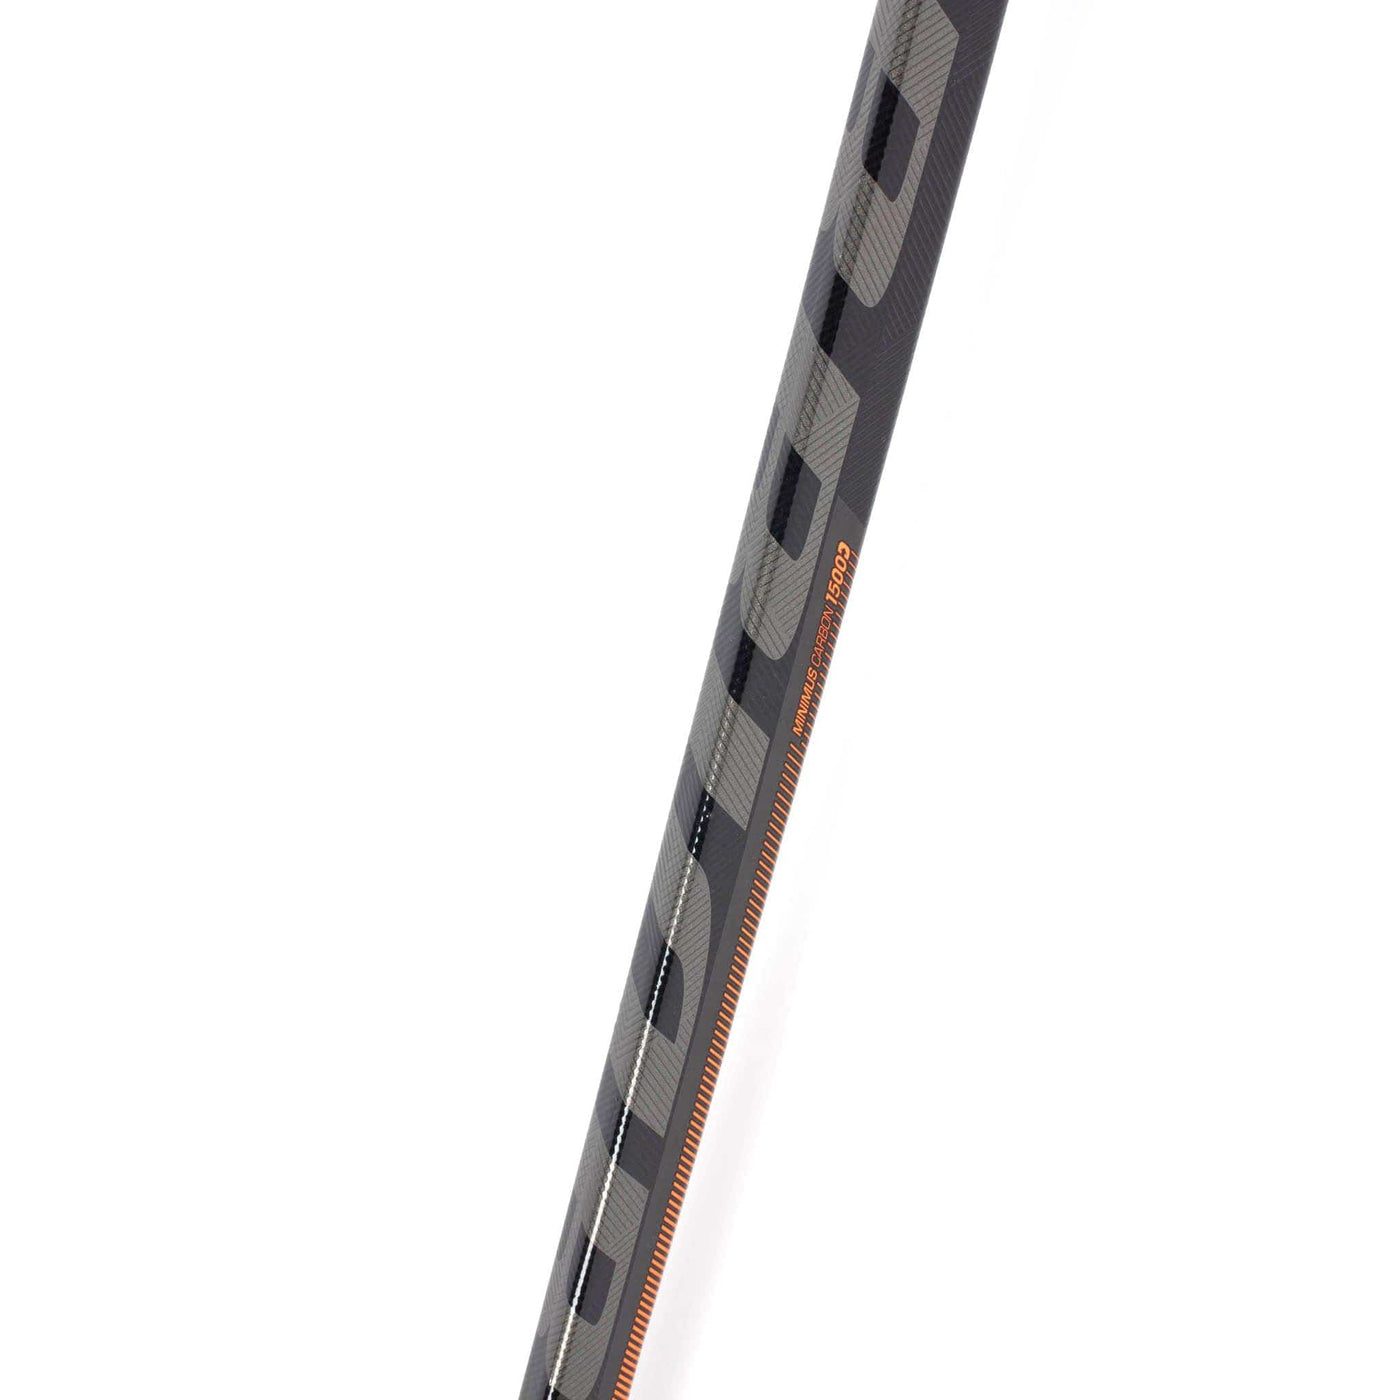 Warrior Covert QRE 10 Senior Hockey Stick - 63" Long